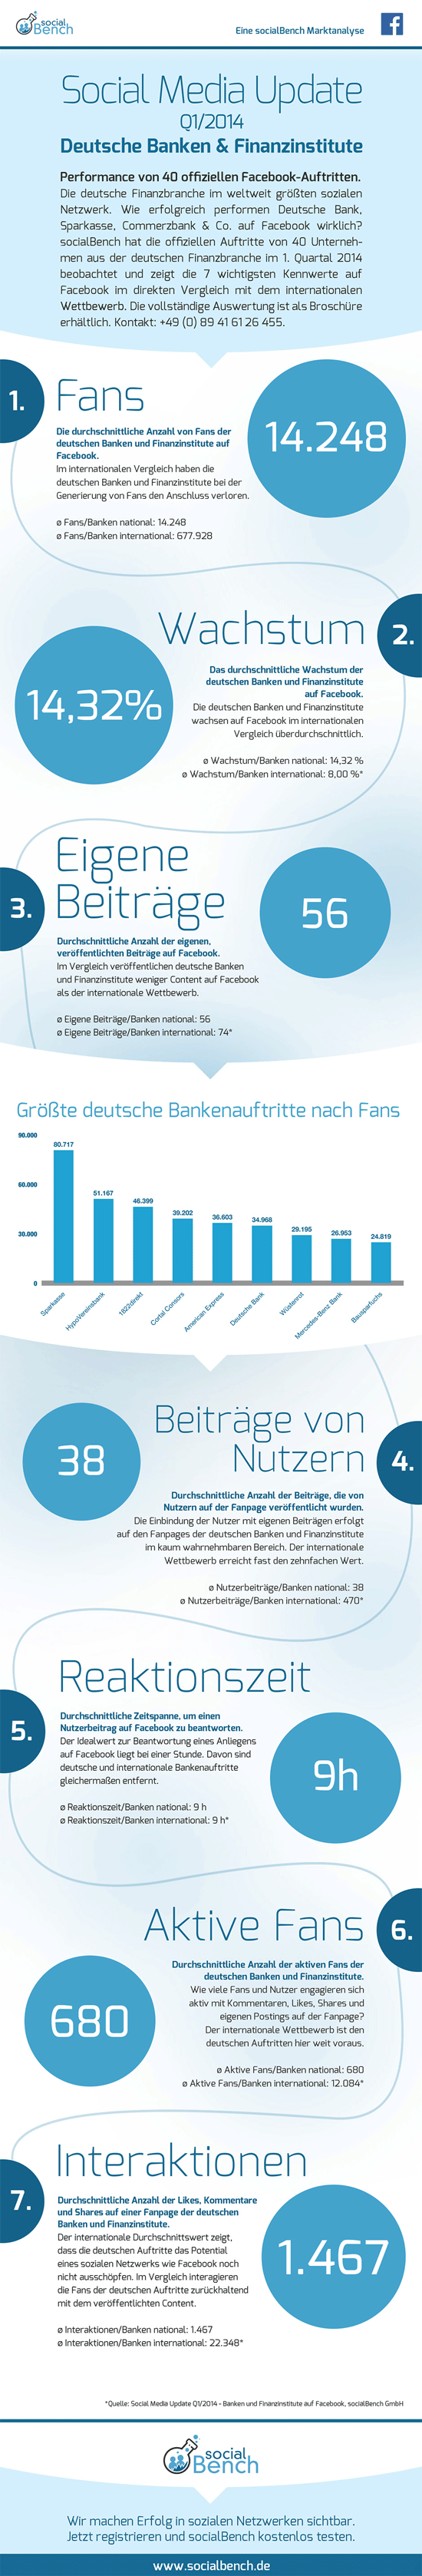 Infografik mit einem Vergleich deutscher und internationaler Banken und Finanzinstitute auf Facebook